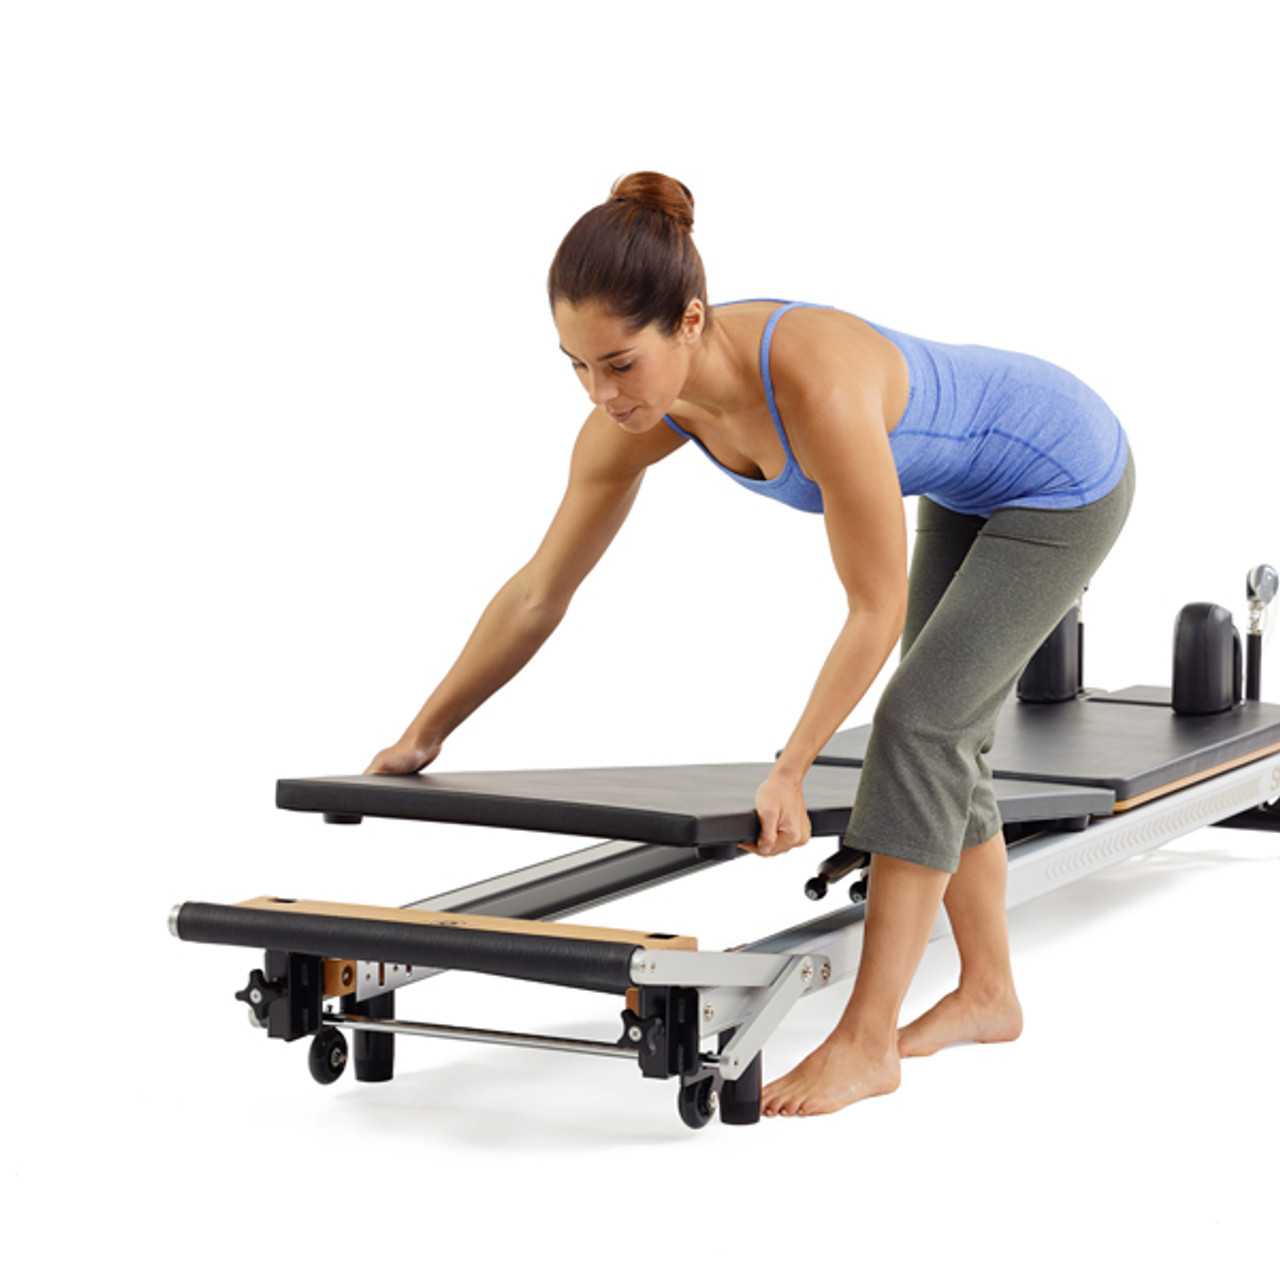 Stott Pilates SPX Reformer, Home Gym Equipment for Sale, Home Exercise  Equipment, Commercial Exercise Equipment